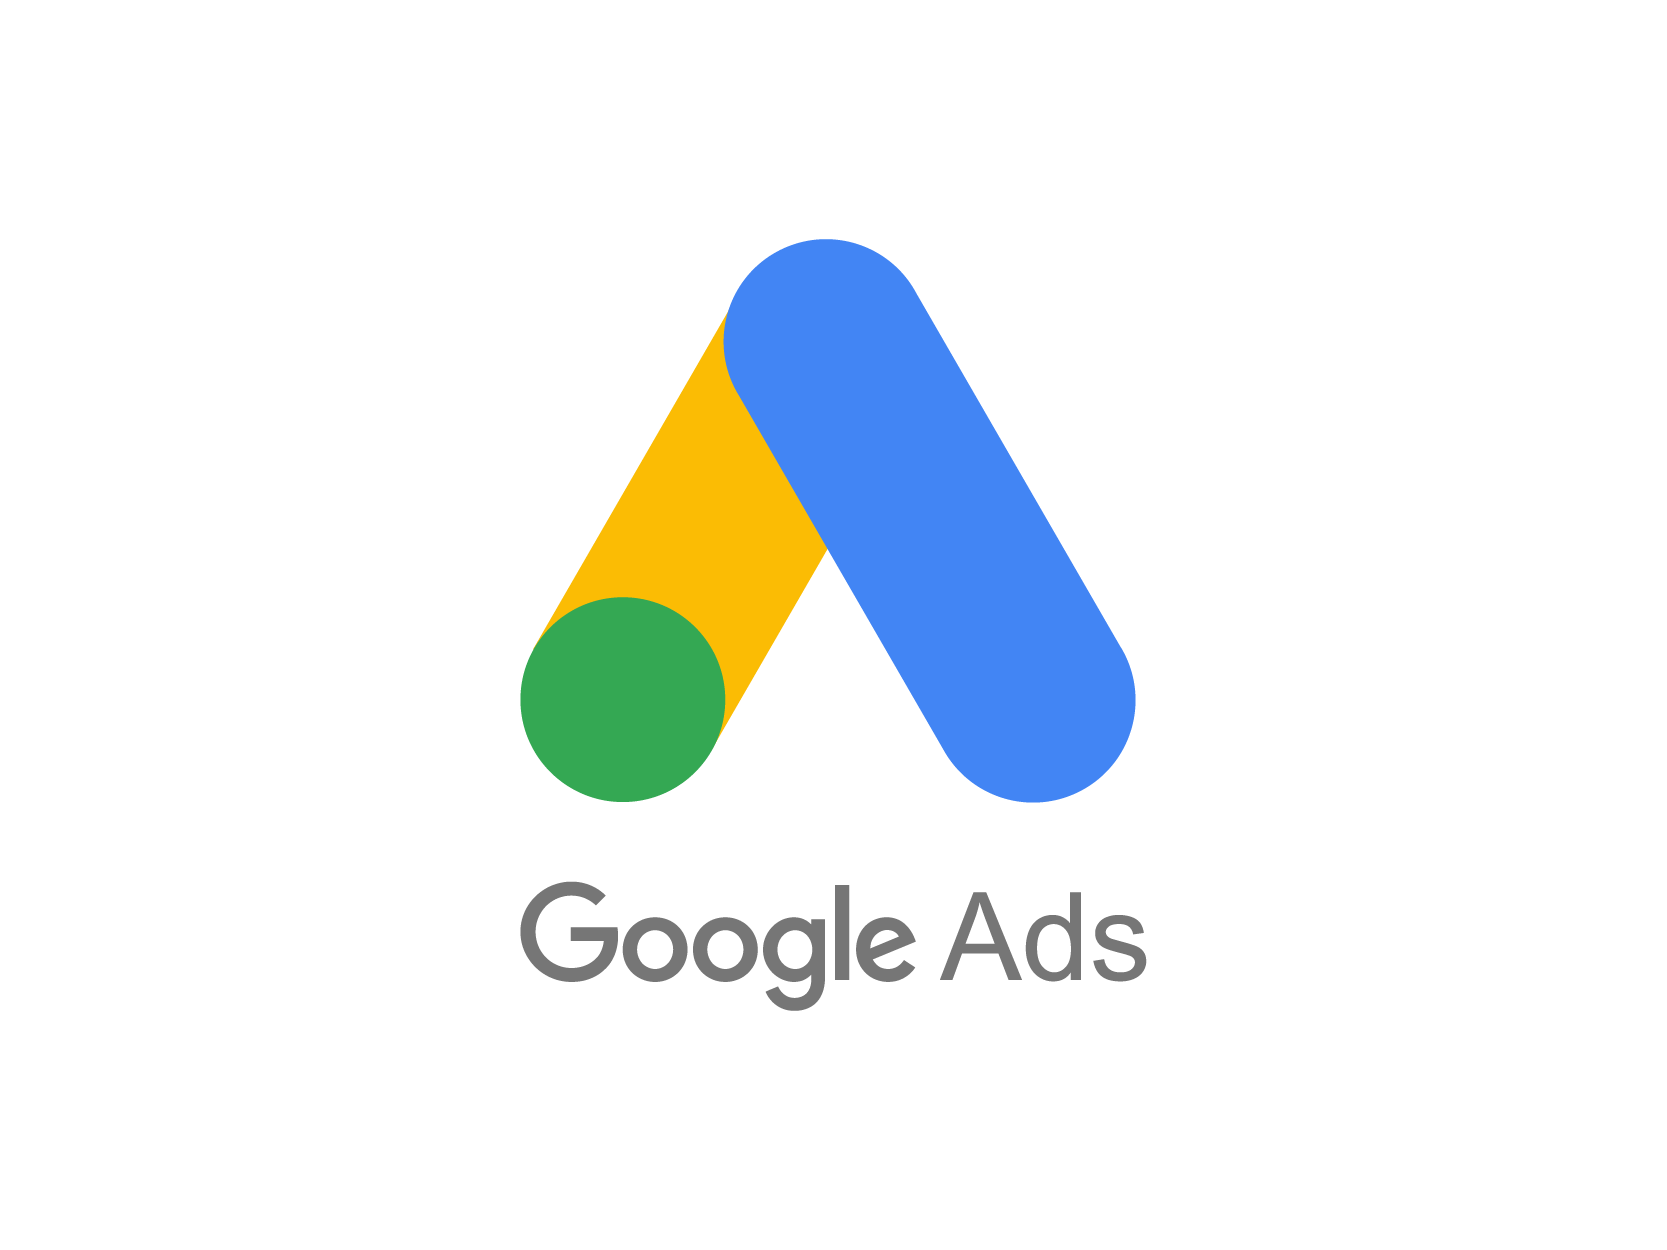 Google Ads标志矢量图